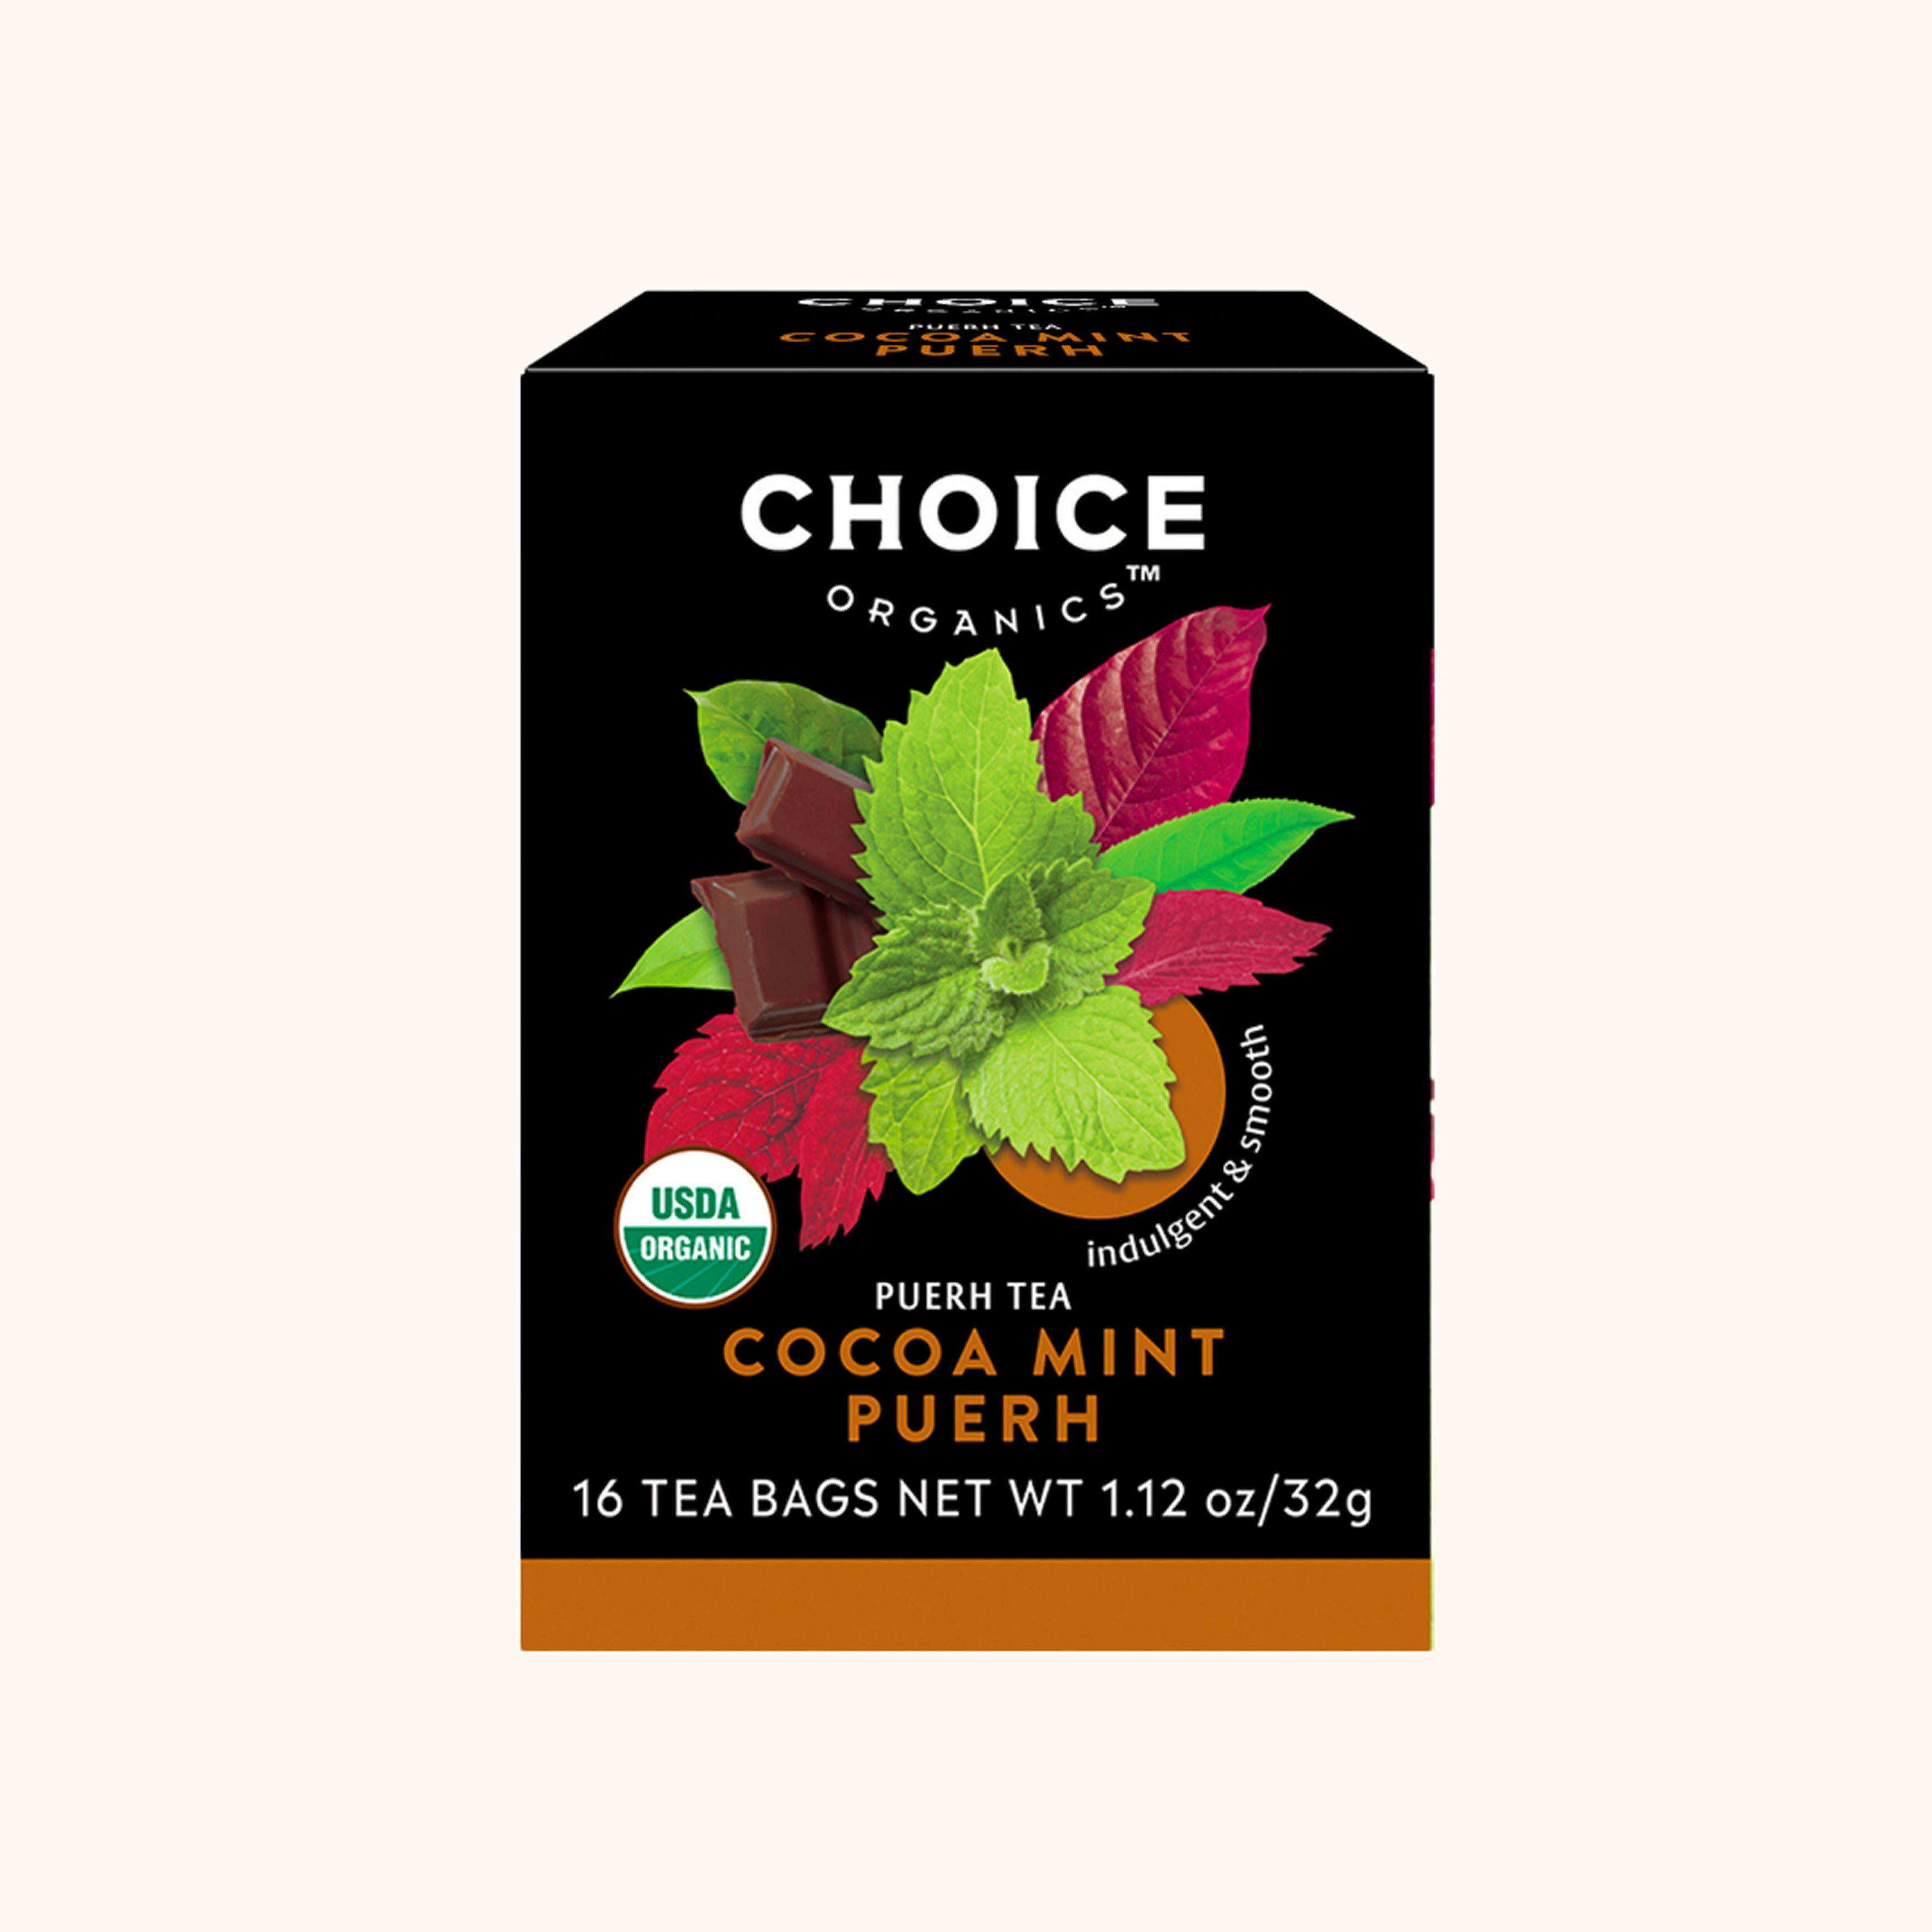 Choice Organic Teas Puerh Tea Cocoa Mint Puerh 16 Tea Bags 1.12 oz (32 g)